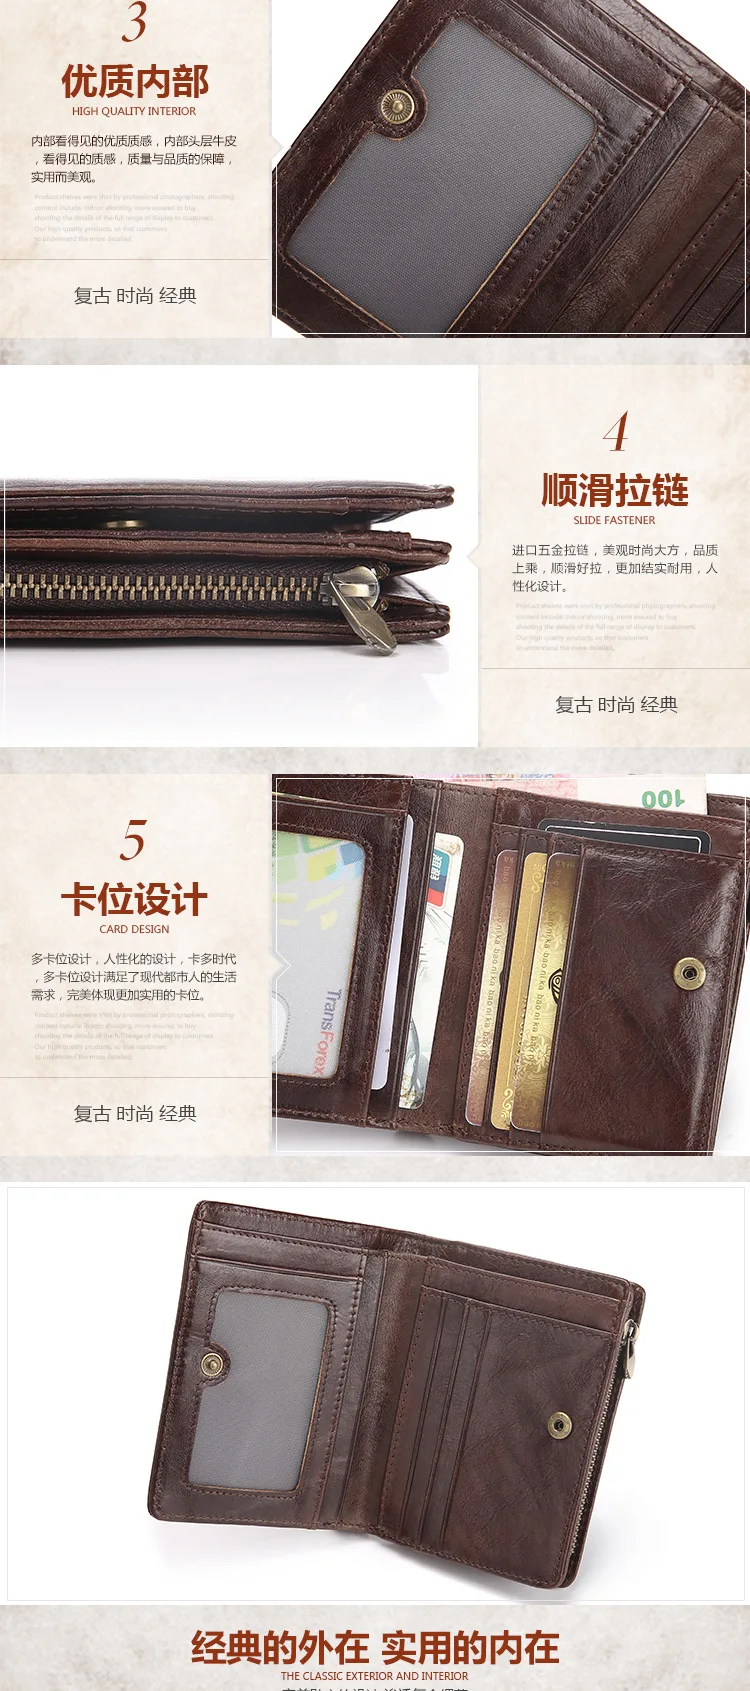 AETOO мужской короткий кошелек кожаный Ретро масло воск кожаный бумажник передник кошелек винтажный кошелек